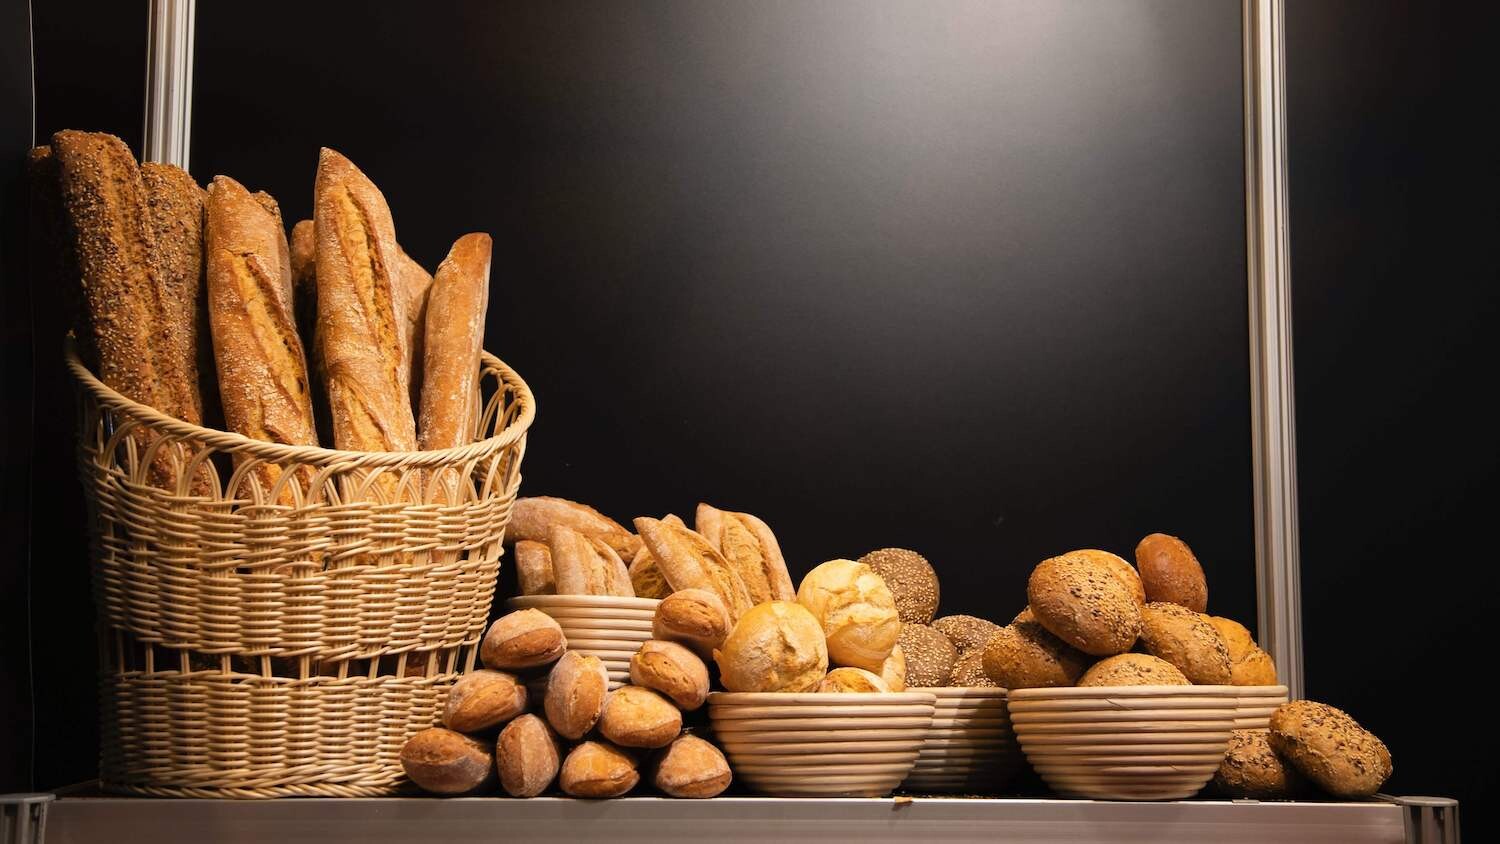 Co zrobić z czerstwego chleba?